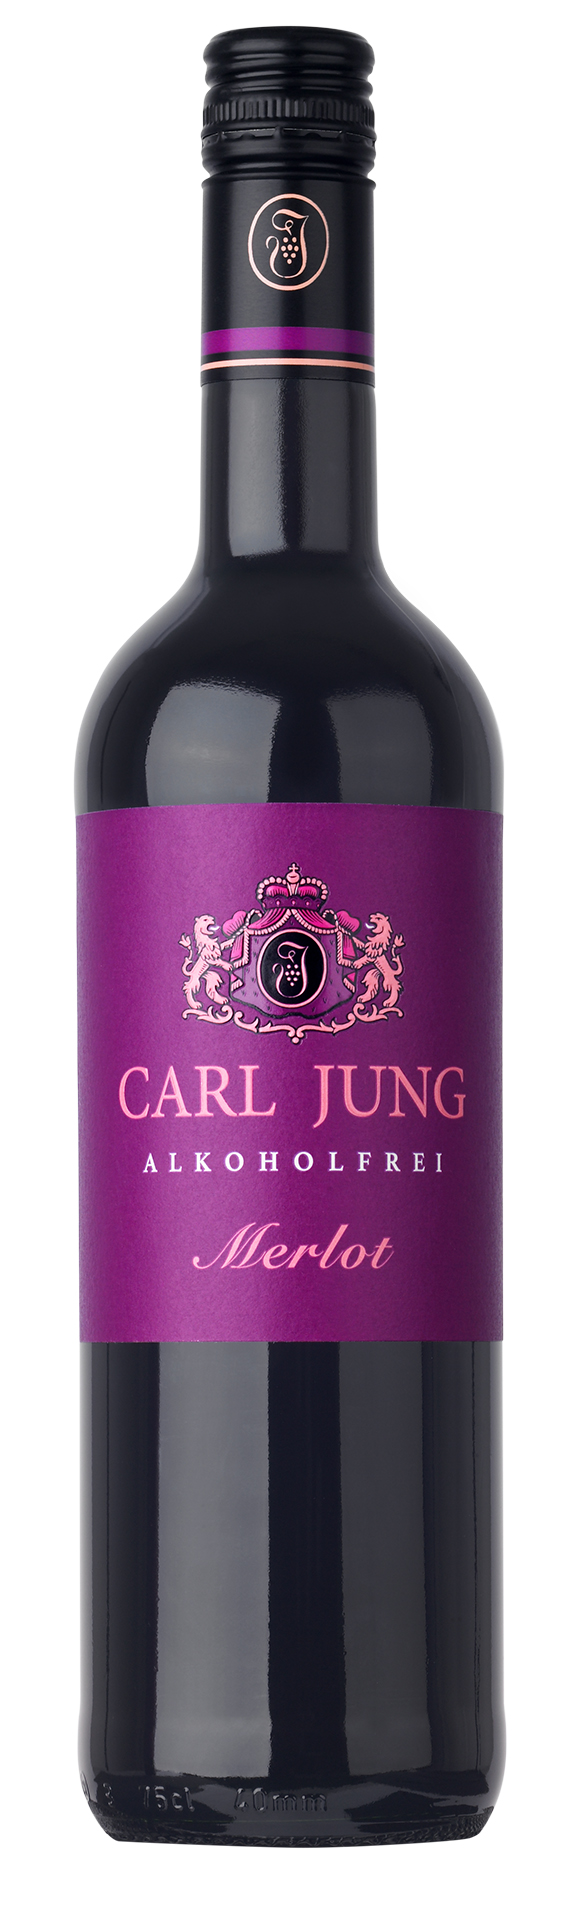 Carl Jung Merlot 0,75l - alkoholfreier Rotwein